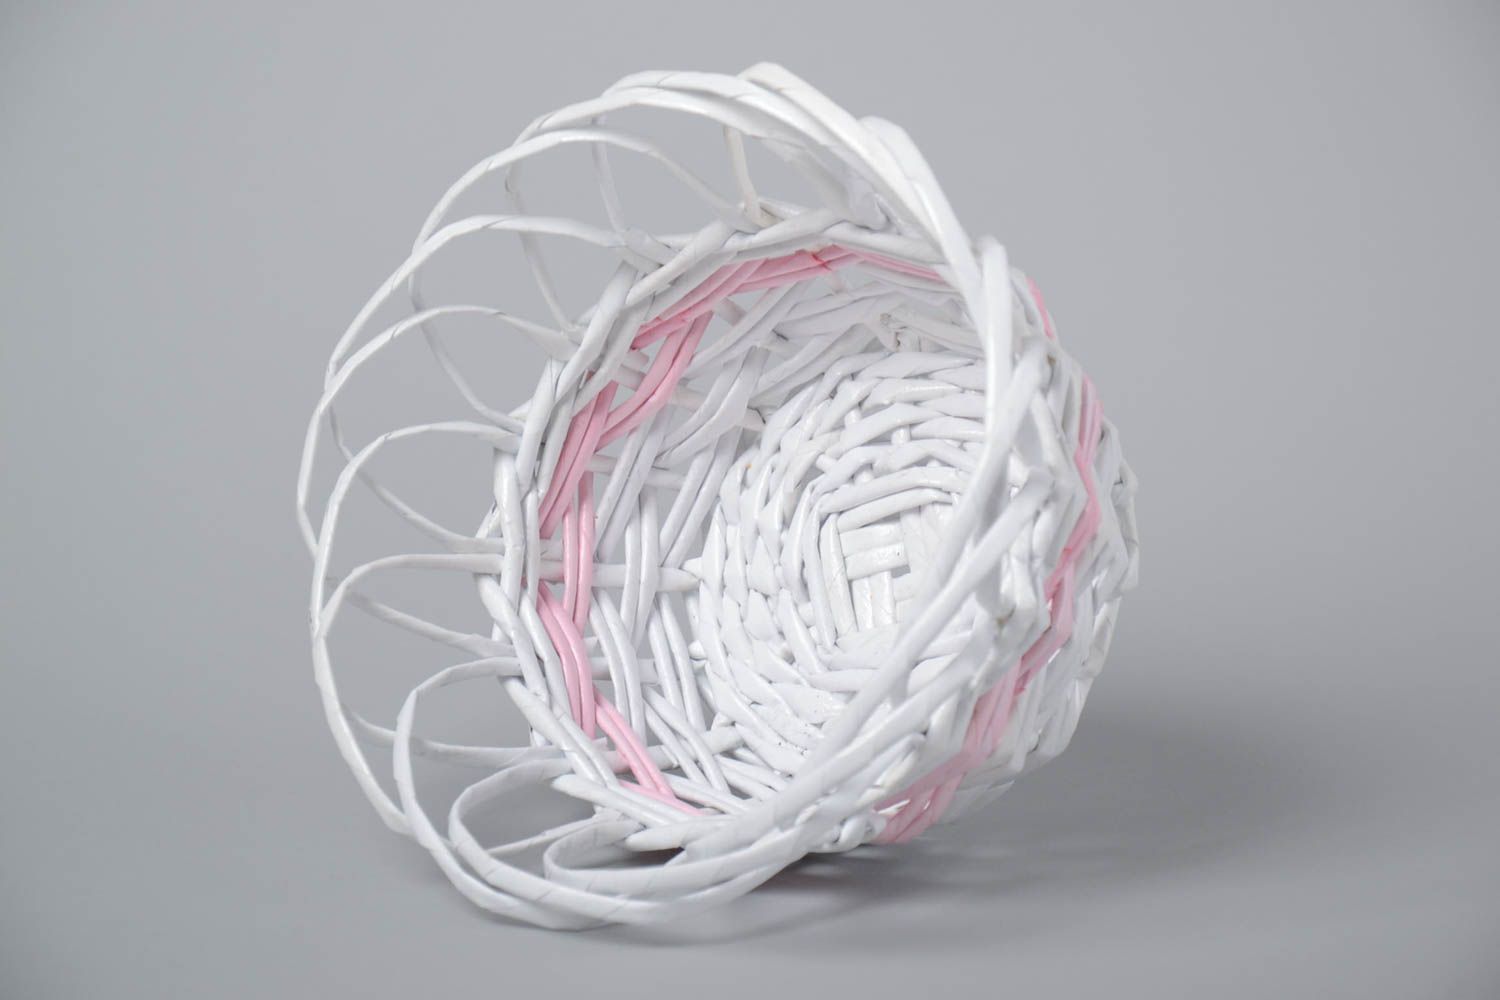 Плетеная вазочка для конфет из бумажной лозы белая ажурная красивая хэнд мейд фото 3